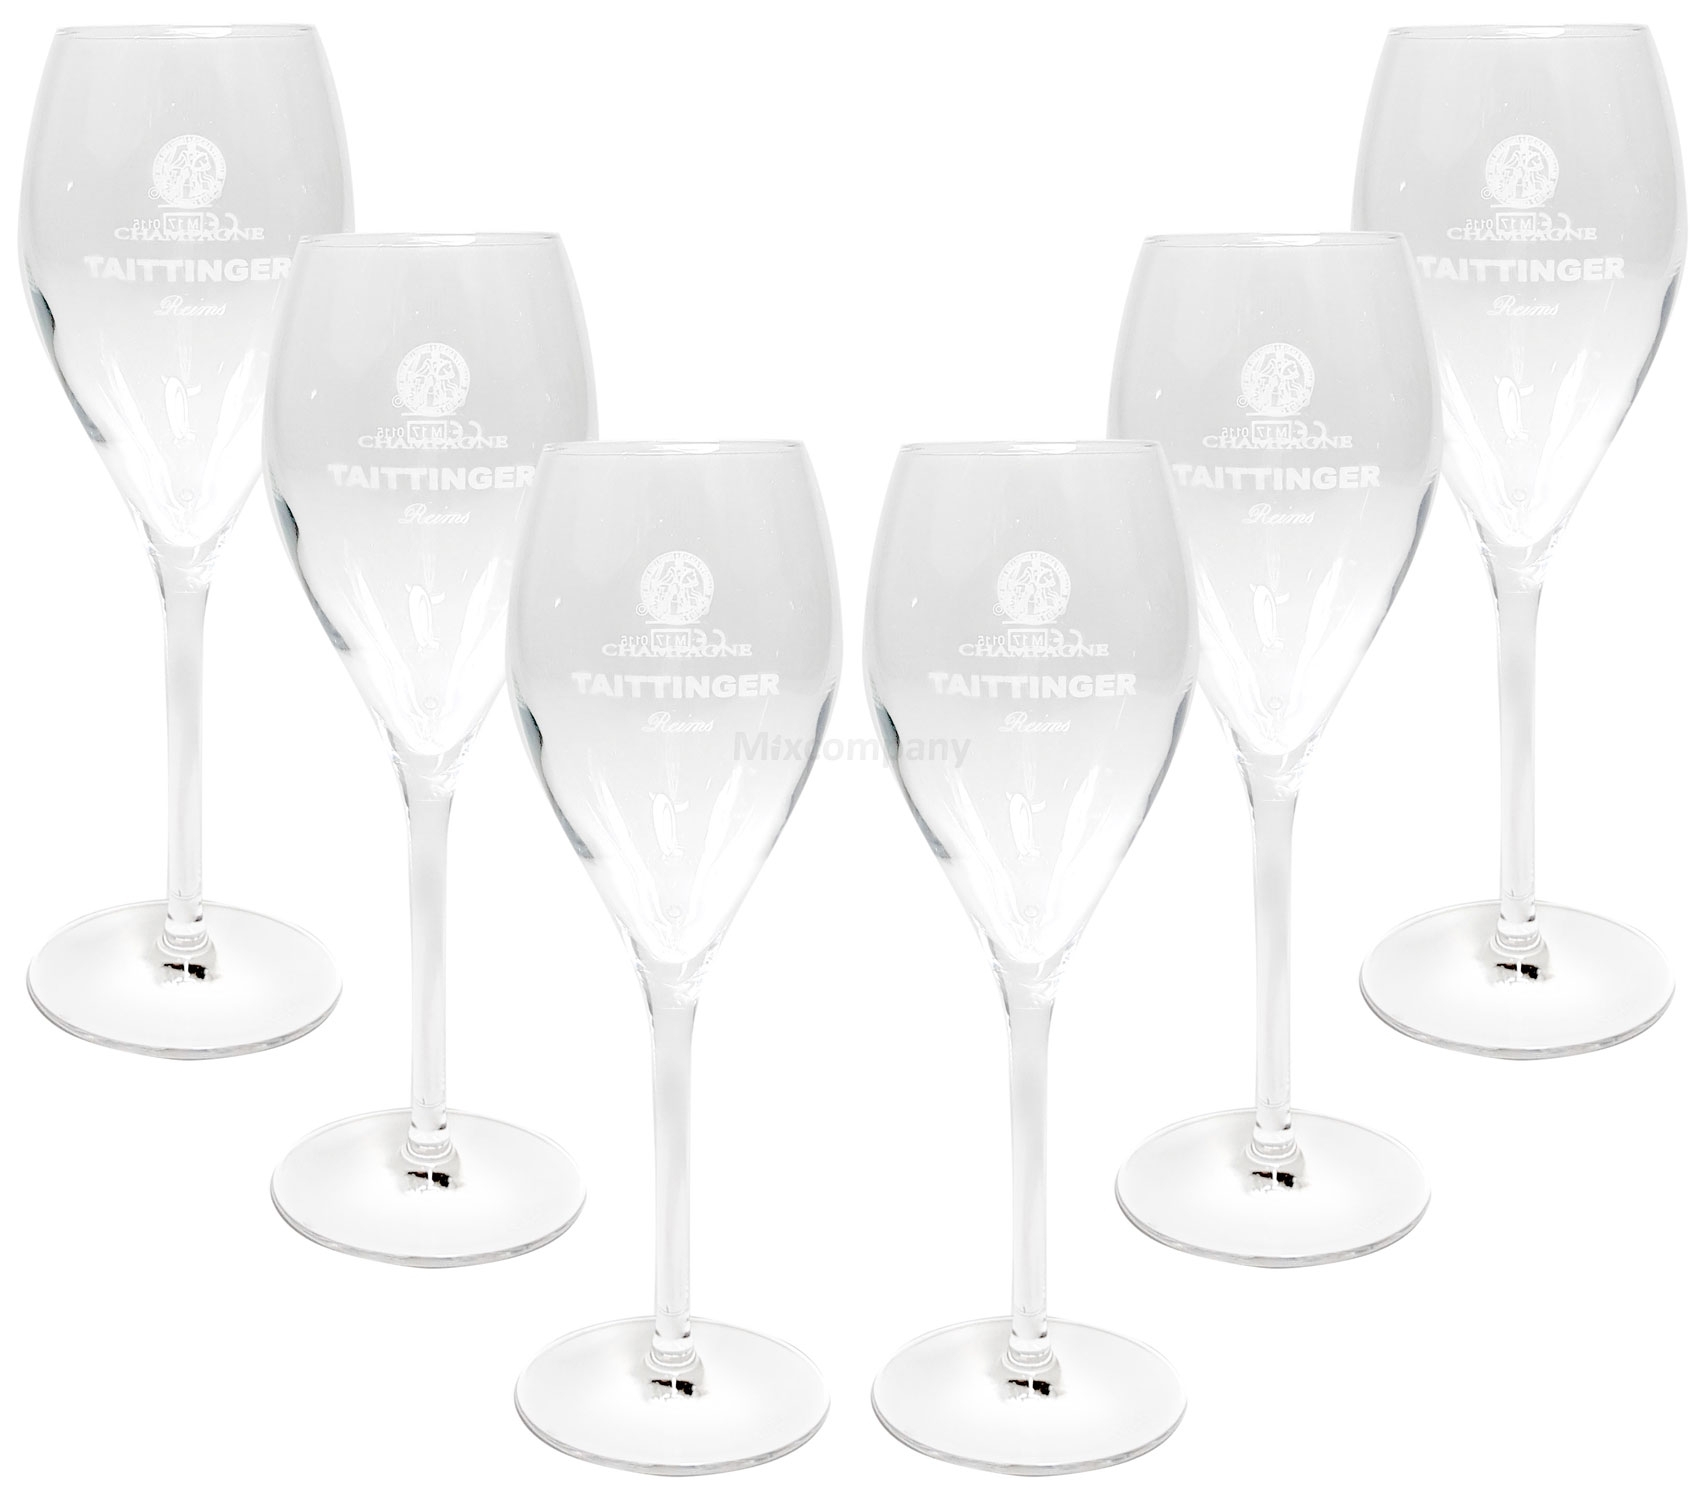 Taittinger Champagner Sekt Glas Gläser-Set - 6x Gläser 10cl geeicht